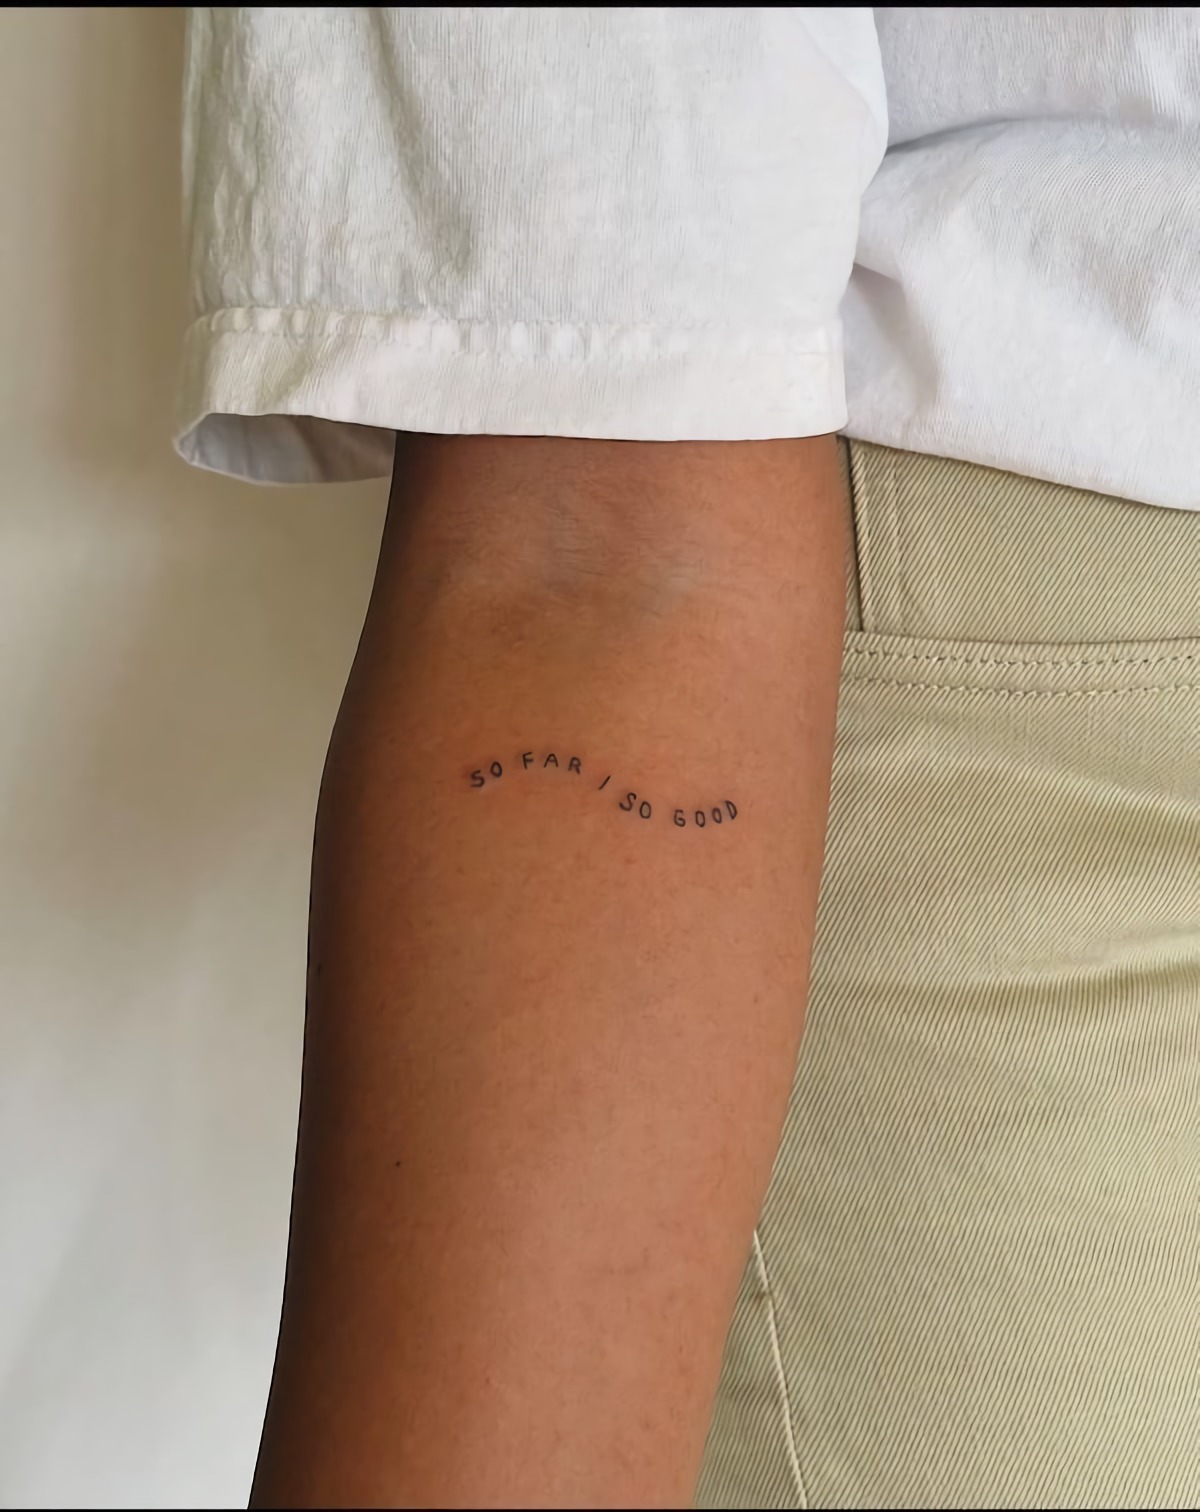 tattoo avambraccio donna tatuaggio con scritta in inglese